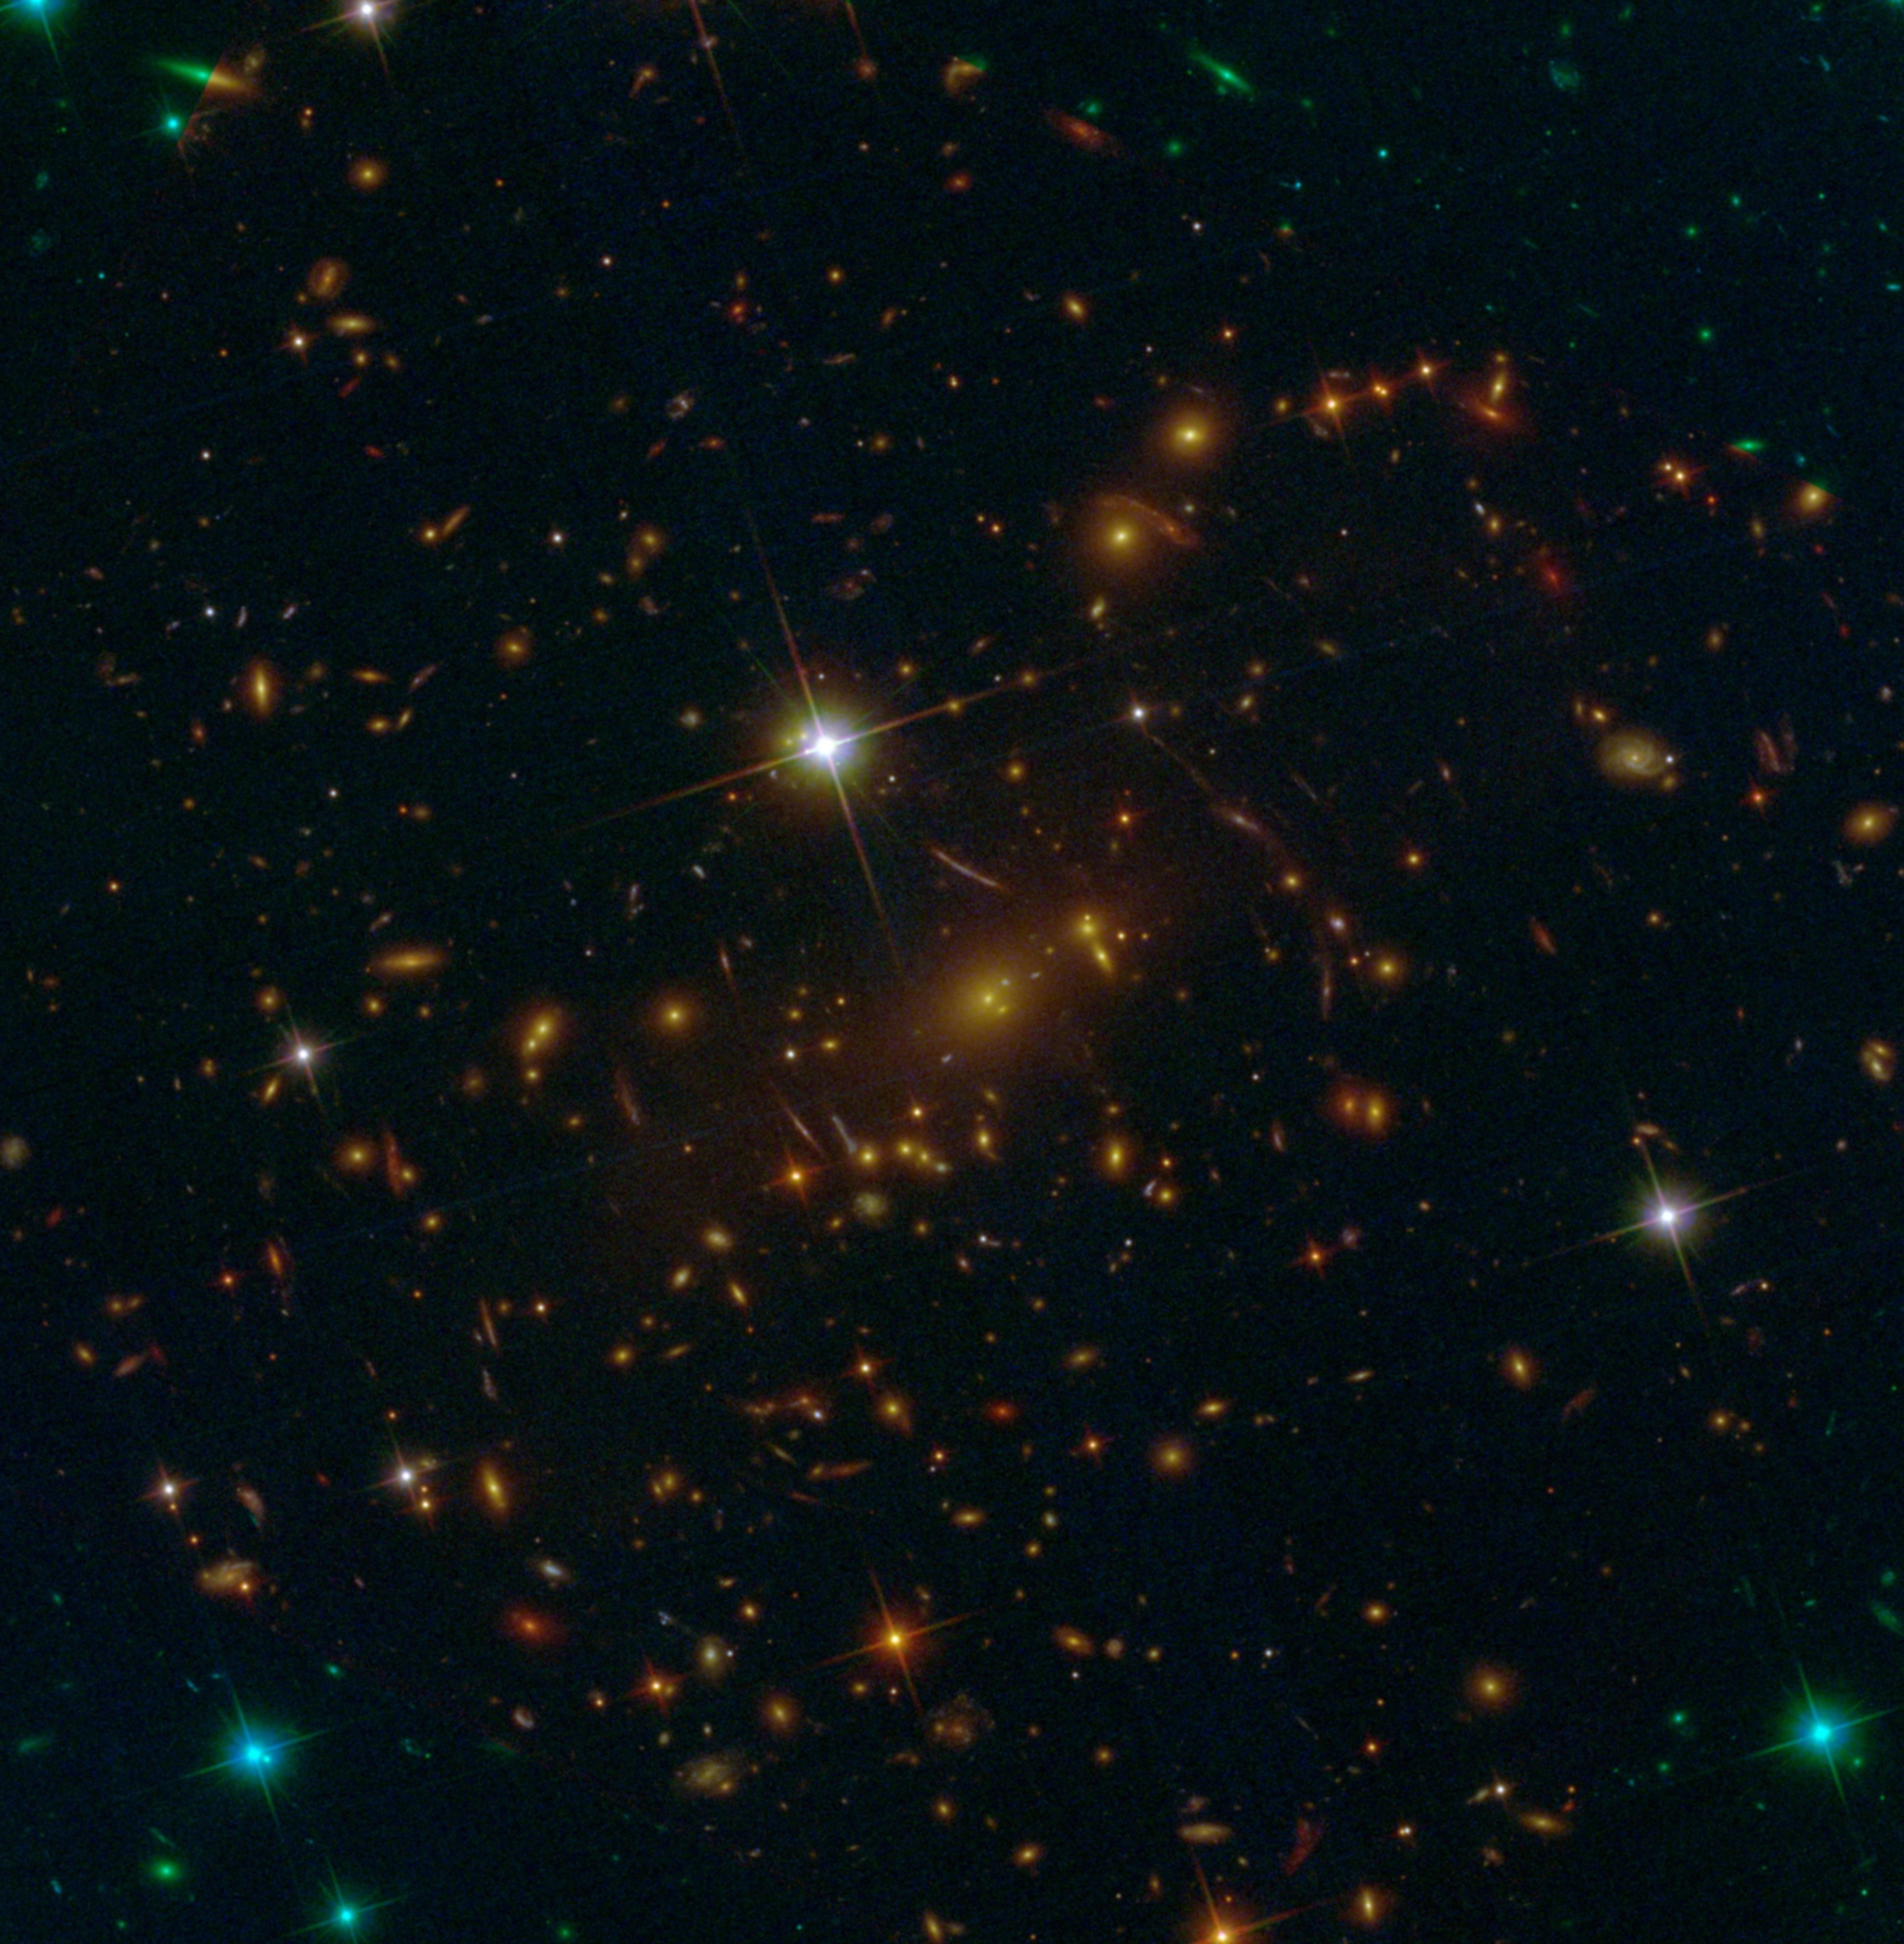 Hubble's Deep Field